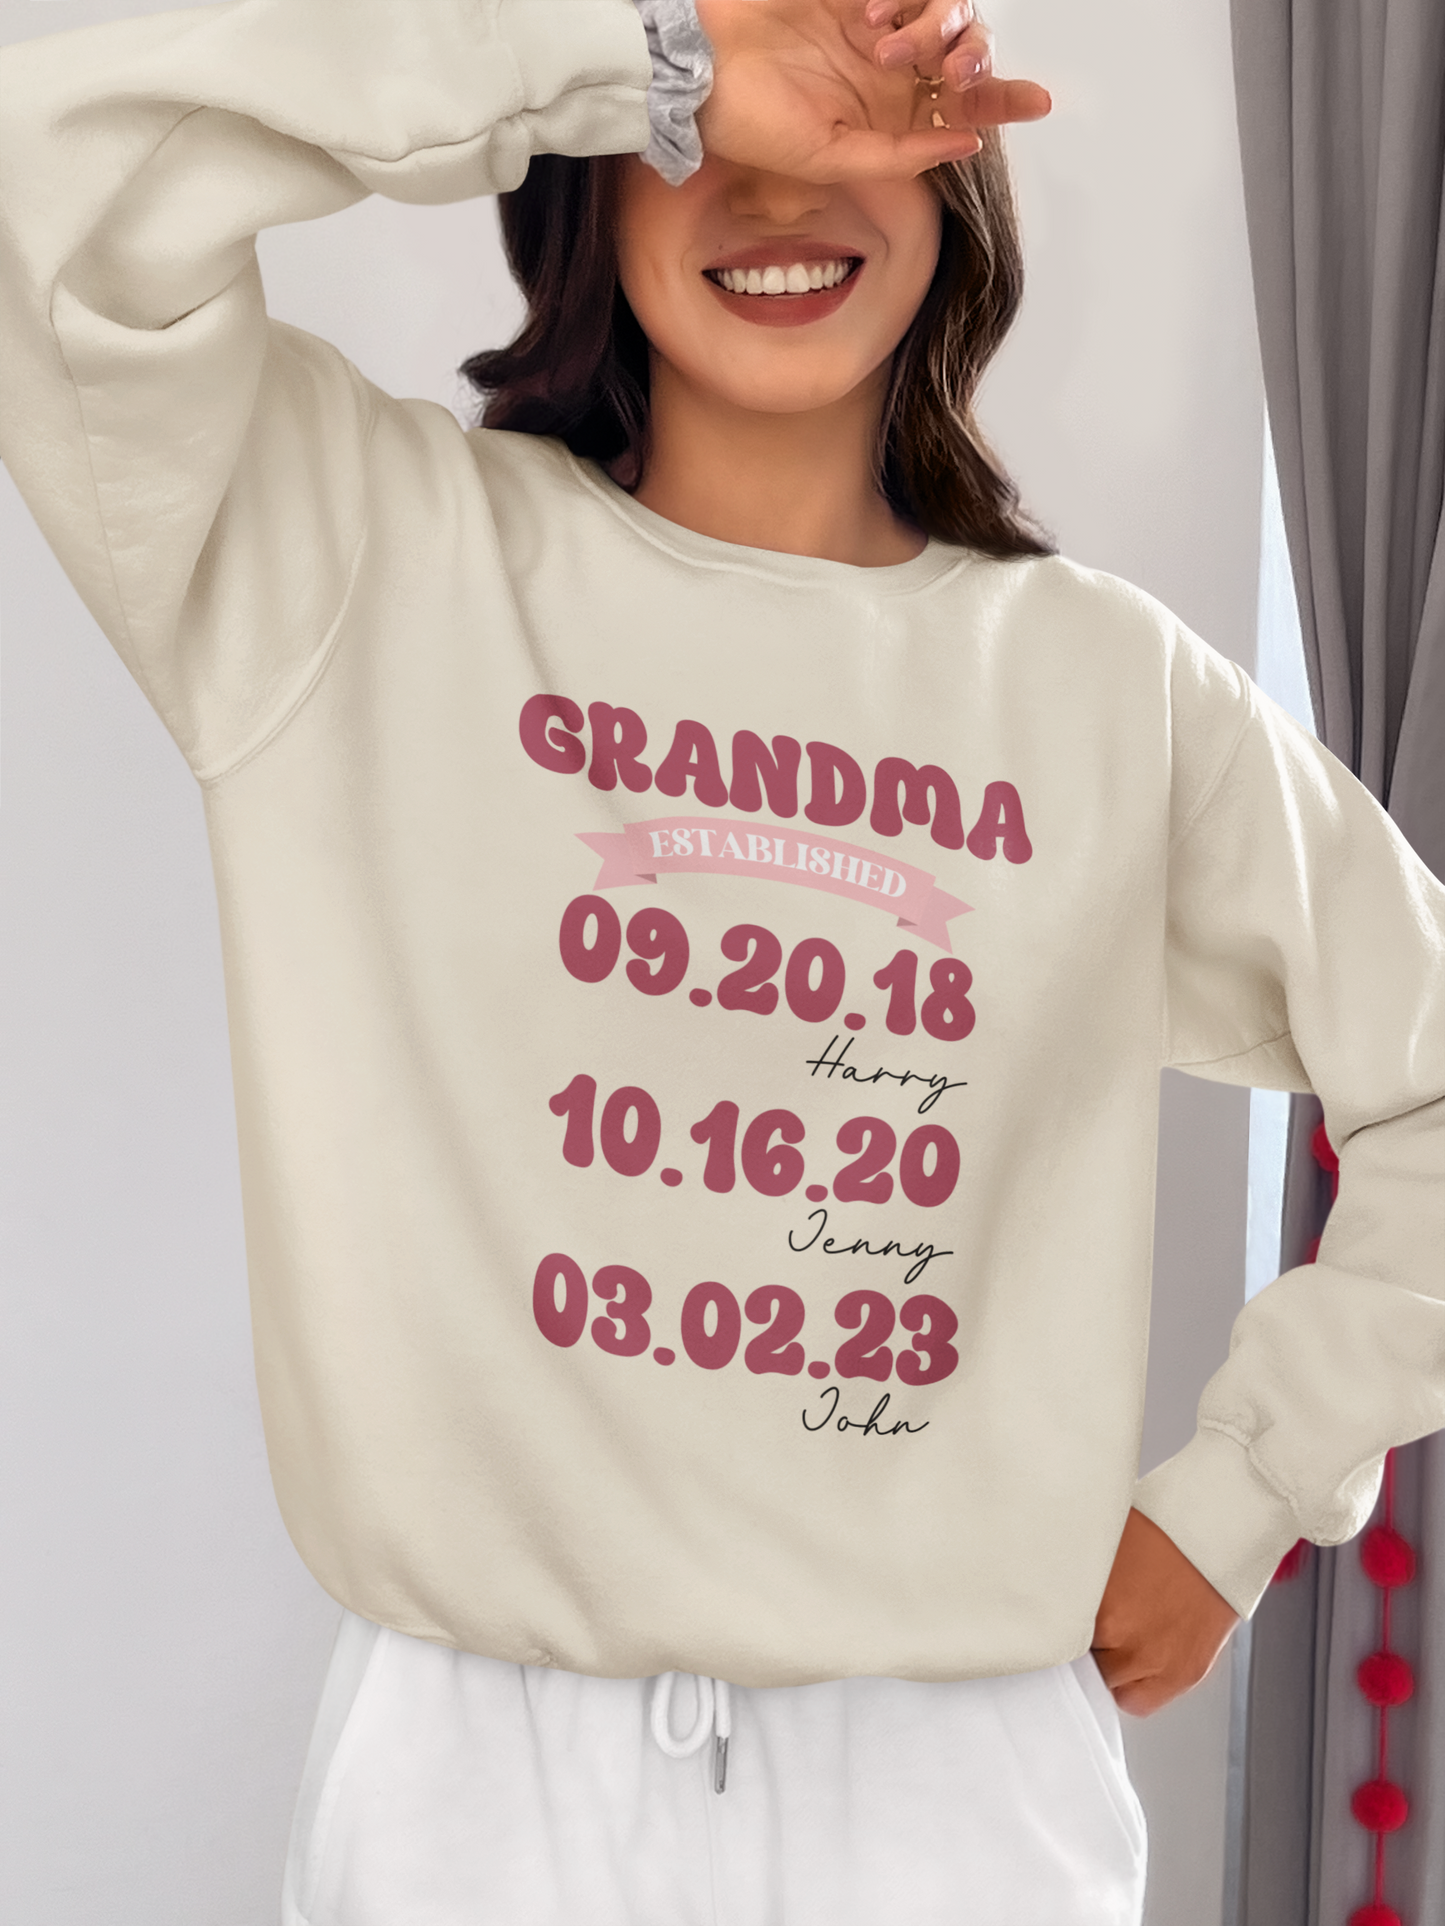 Personalized Mom Grandma Shirt, Mom Est Grandma Est Custom Tshirt, Mother's Day Gift for Grandma Tee, Grandma To Be Shirt, Mom Nana Established Tee